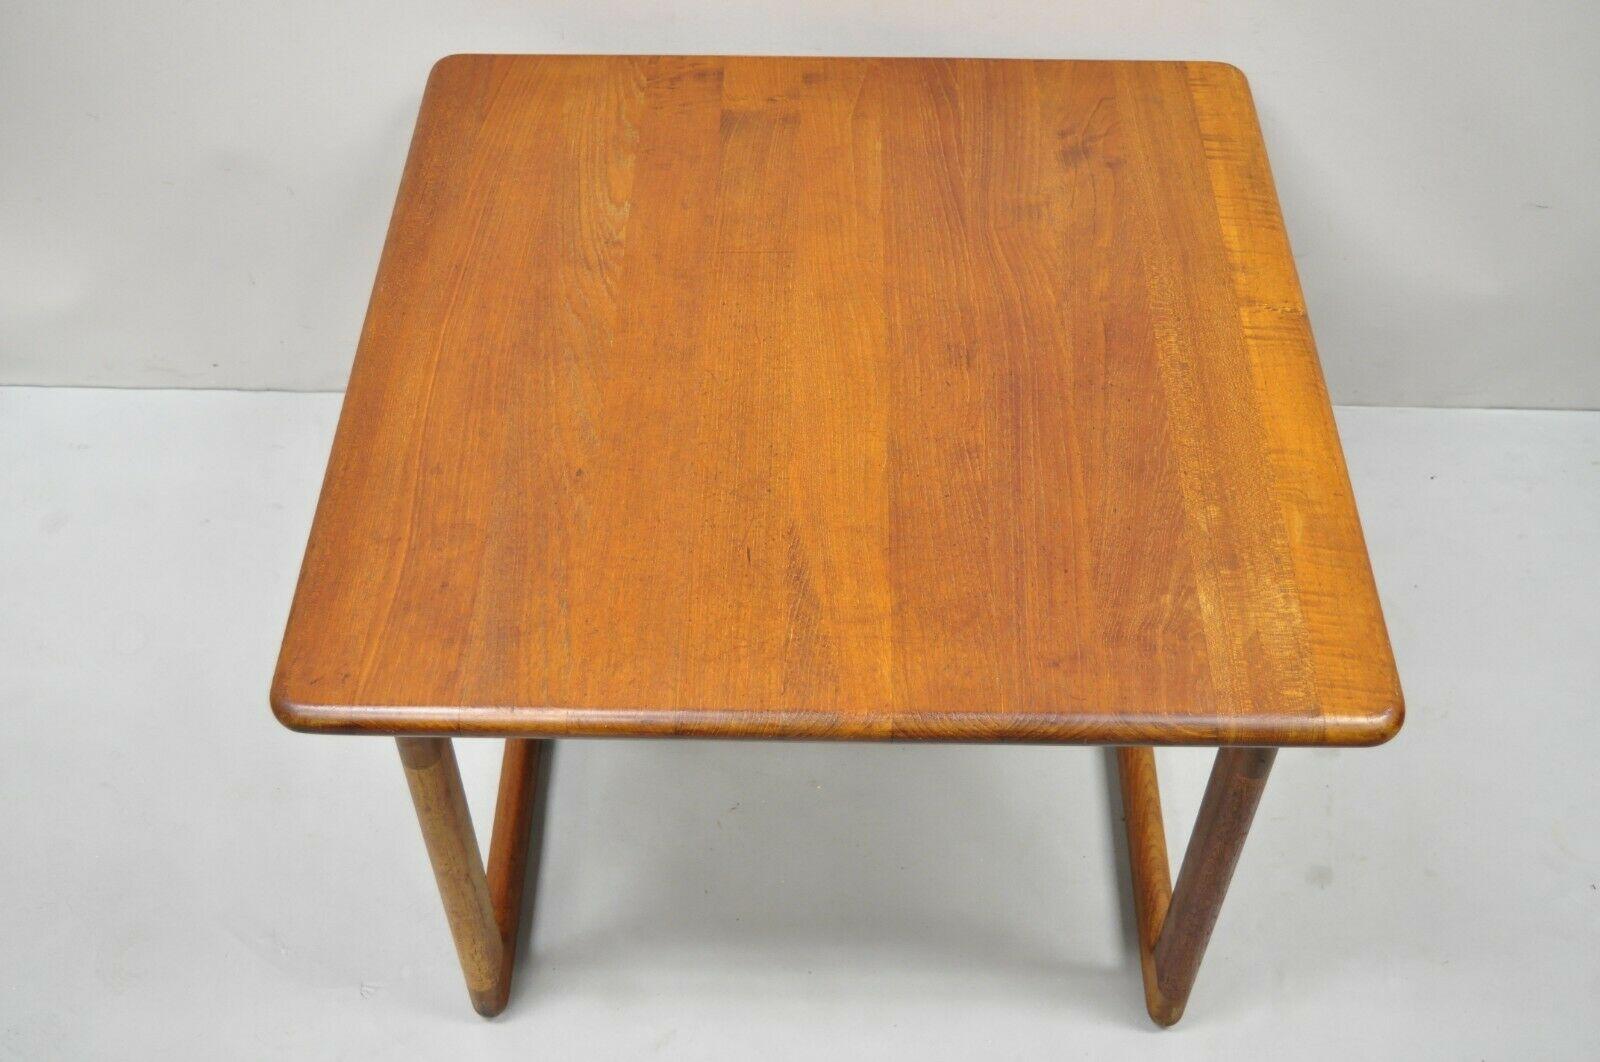 Table d'appoint carrée en bois de teck, style danois moderne du milieu du siècle. L'article est doté d'une base en forme de civière, d'une construction en bois massif, d'un beau grain de bois, du cachet d'origine du Danemark, de lignes modernistes